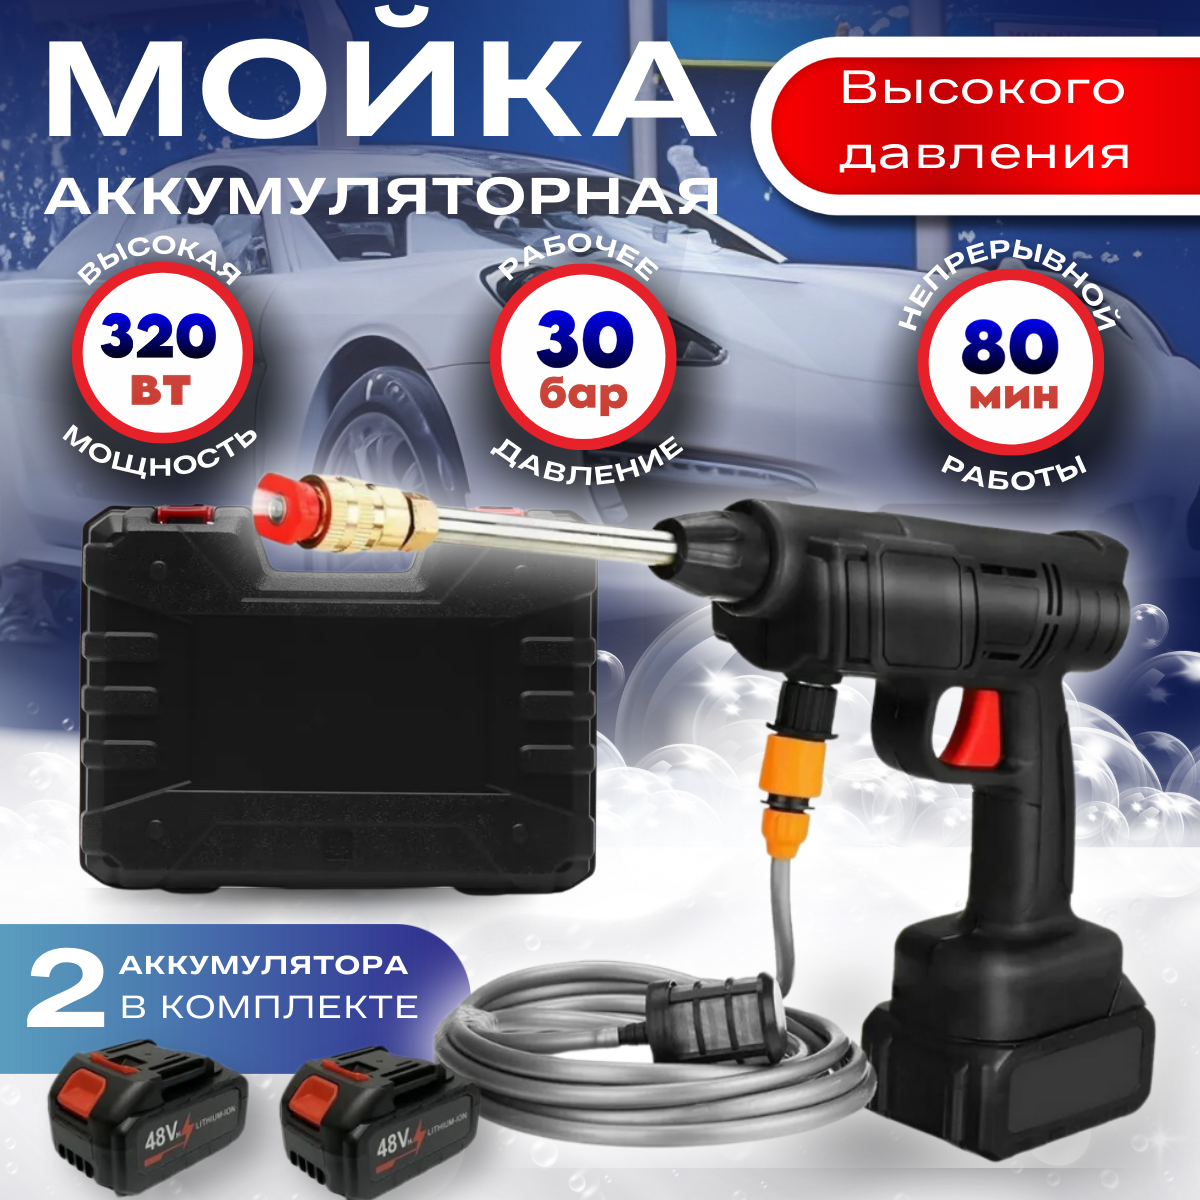 Электрическая мойка высокого давления Top Brend Shop car_wash - купить в Москве, цены на Мегамаркет | 600017017118